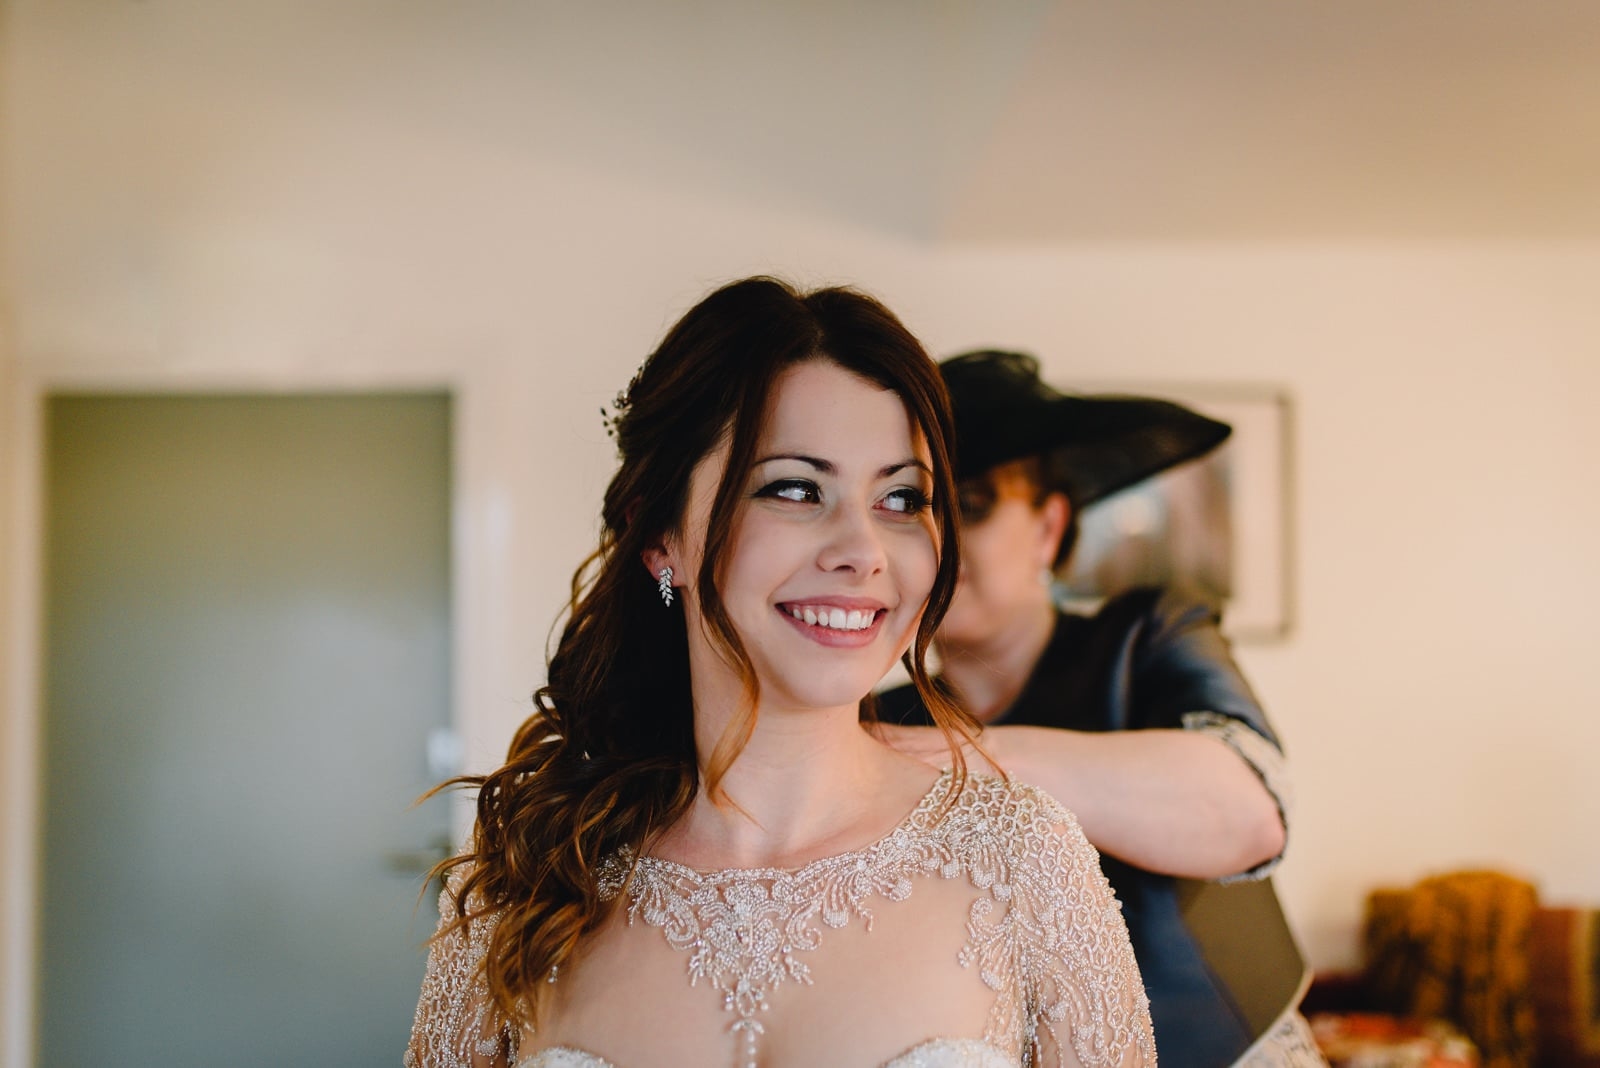 happy bride